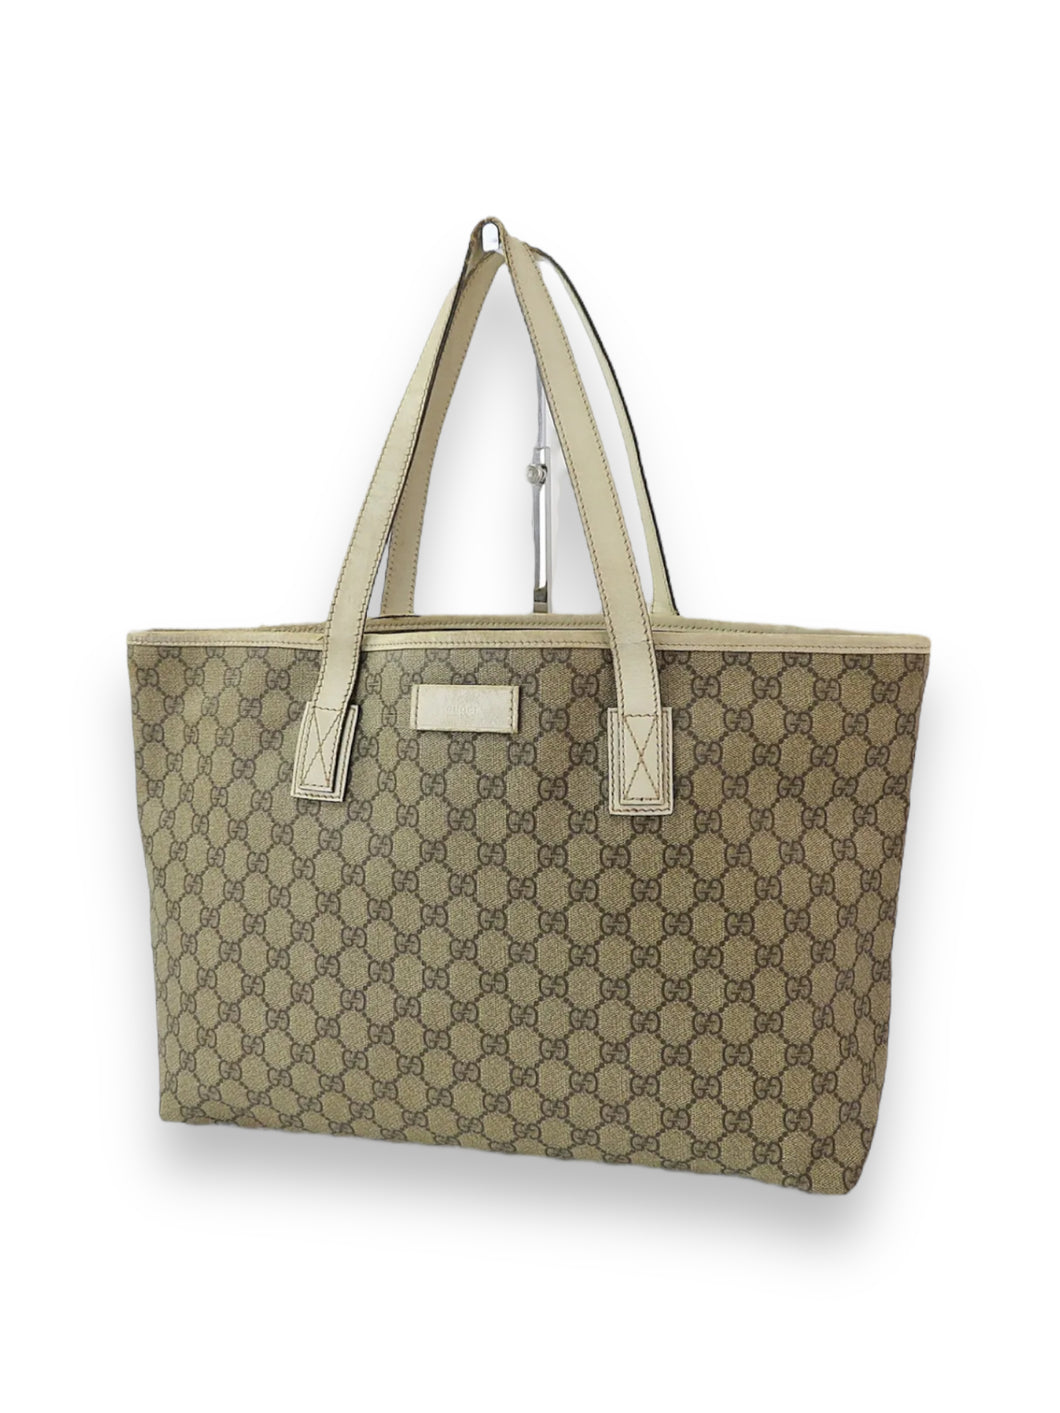 Gucci tote bag purse